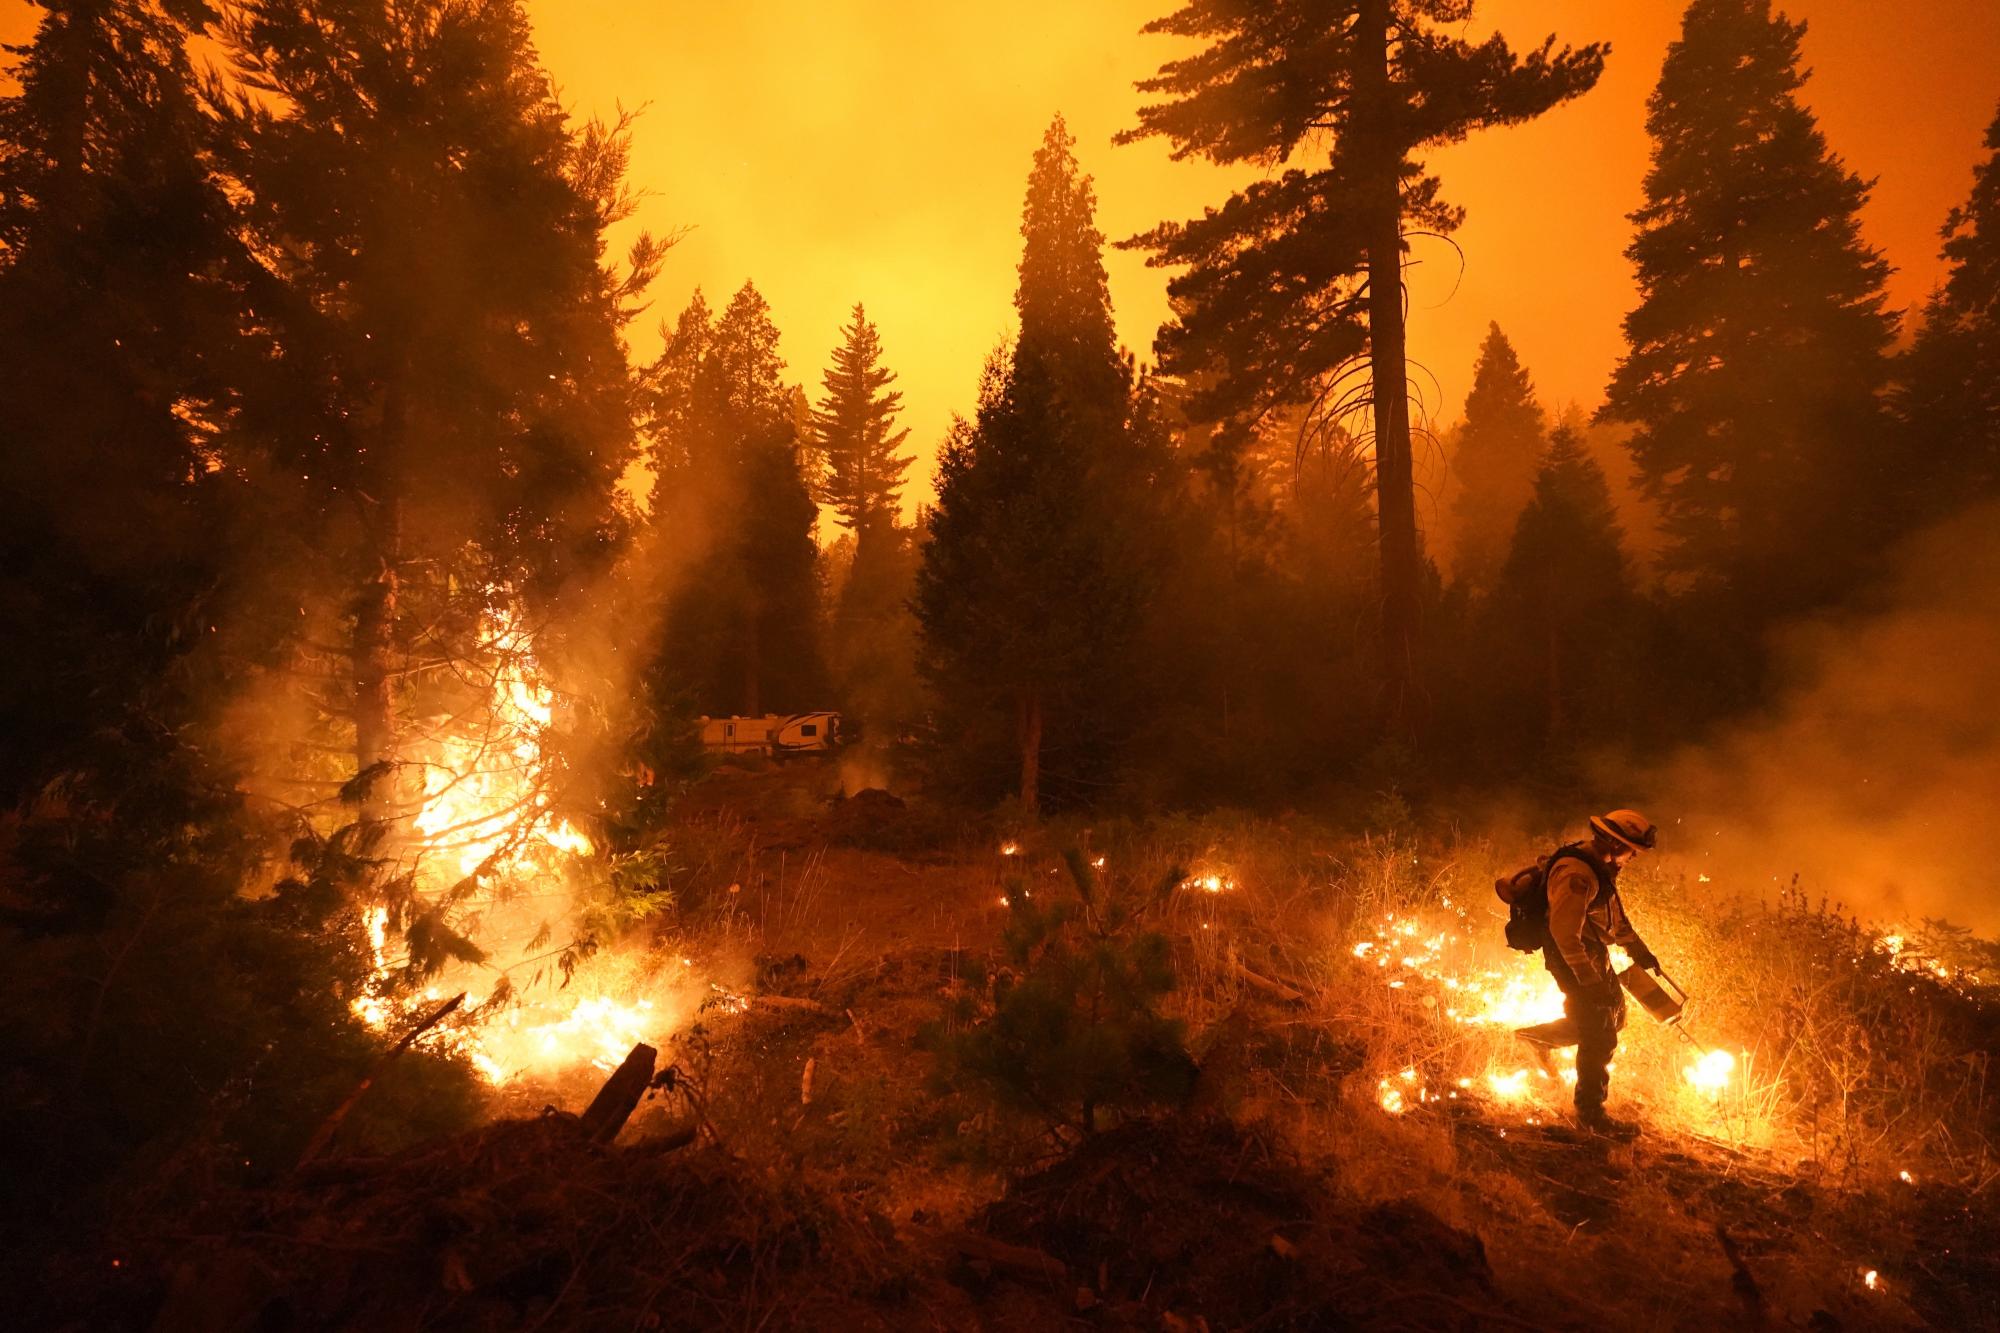 Ricardo Gomez, perteneciente al cuerpo de bomberos de San Benito Montery,  enciende una zona de fuego controlado para evitar el avance del incendio forestal  en Shaver Lake, California. (AP Photo/Marcio Jose Sanchez)